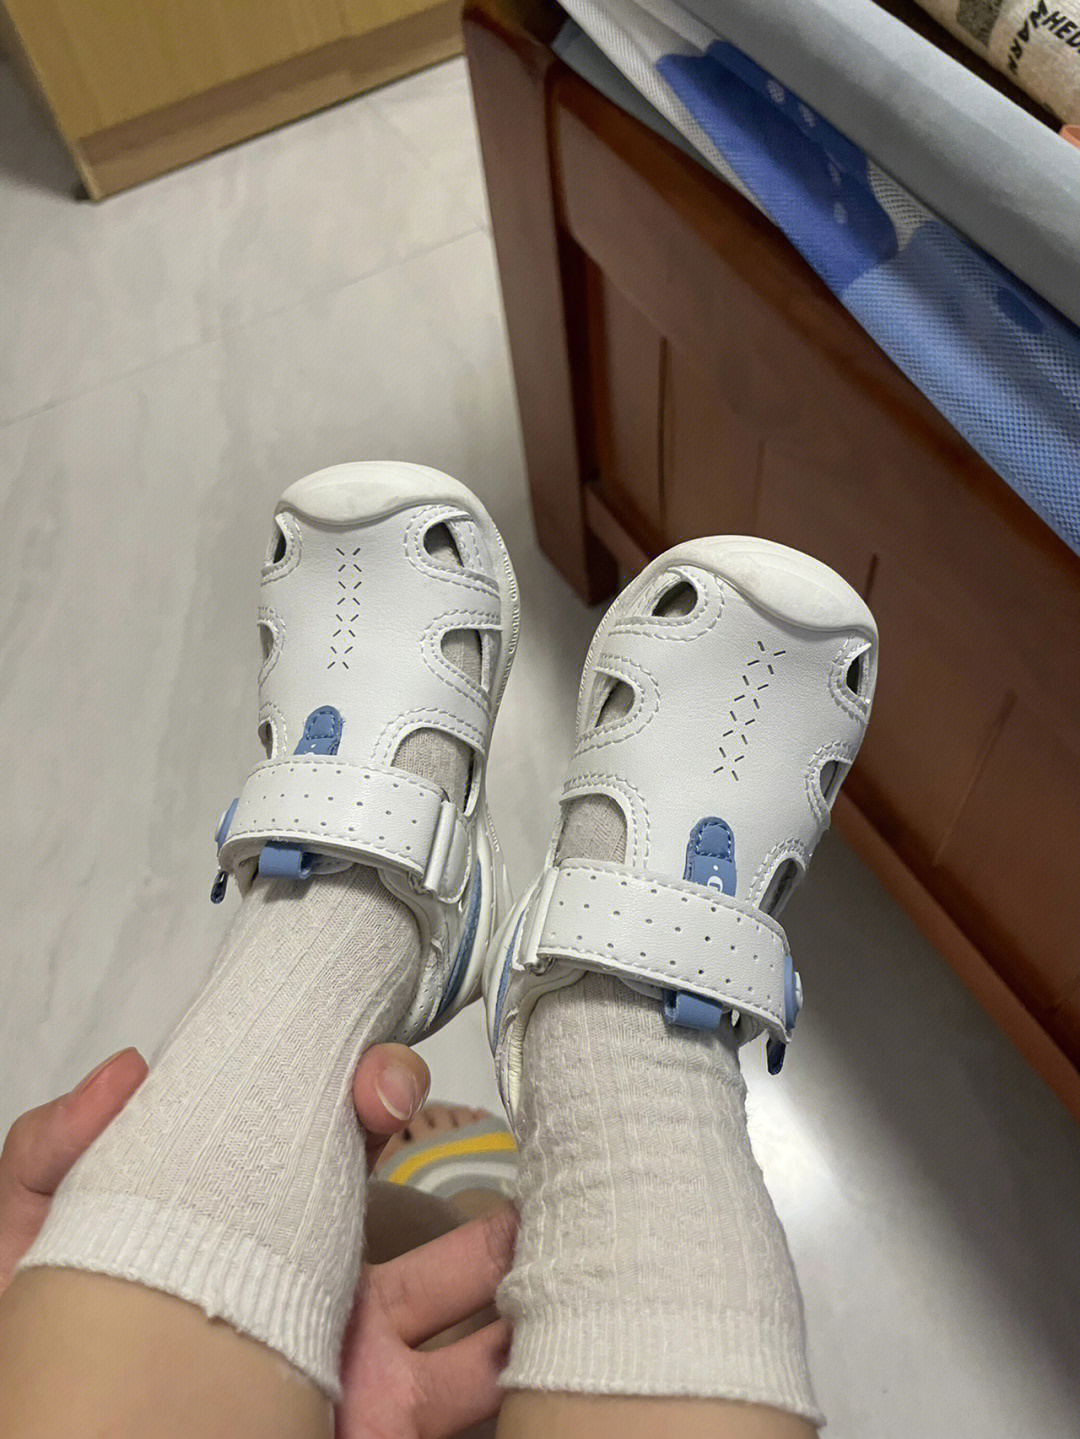 我儿14个月,前2双鞋是江博士网面的单鞋,脚长得快,又因为刚学走路不能